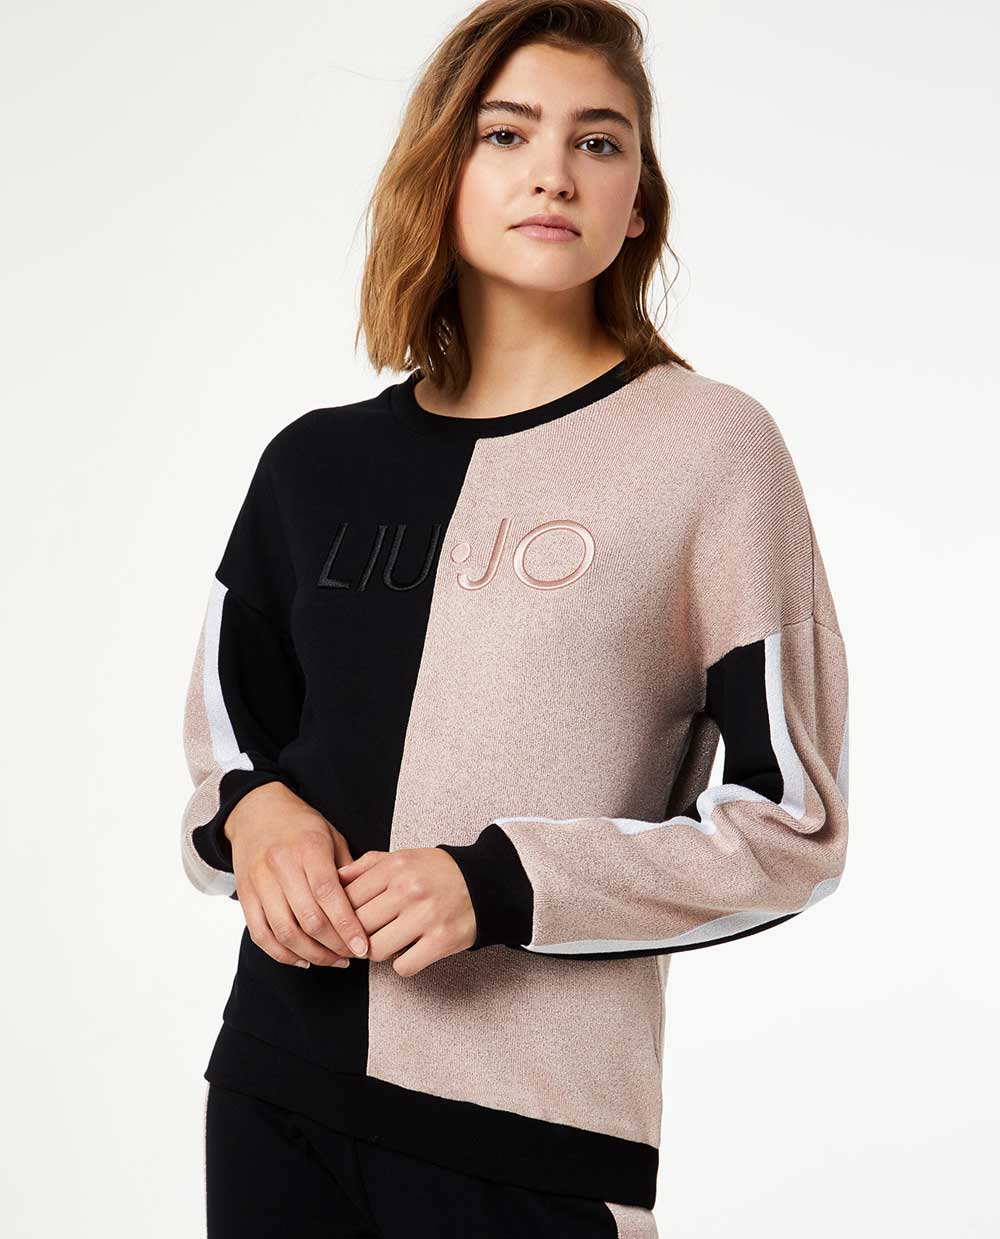 Felpe Sportwear Liu Jo autunno inverno 2019 2020